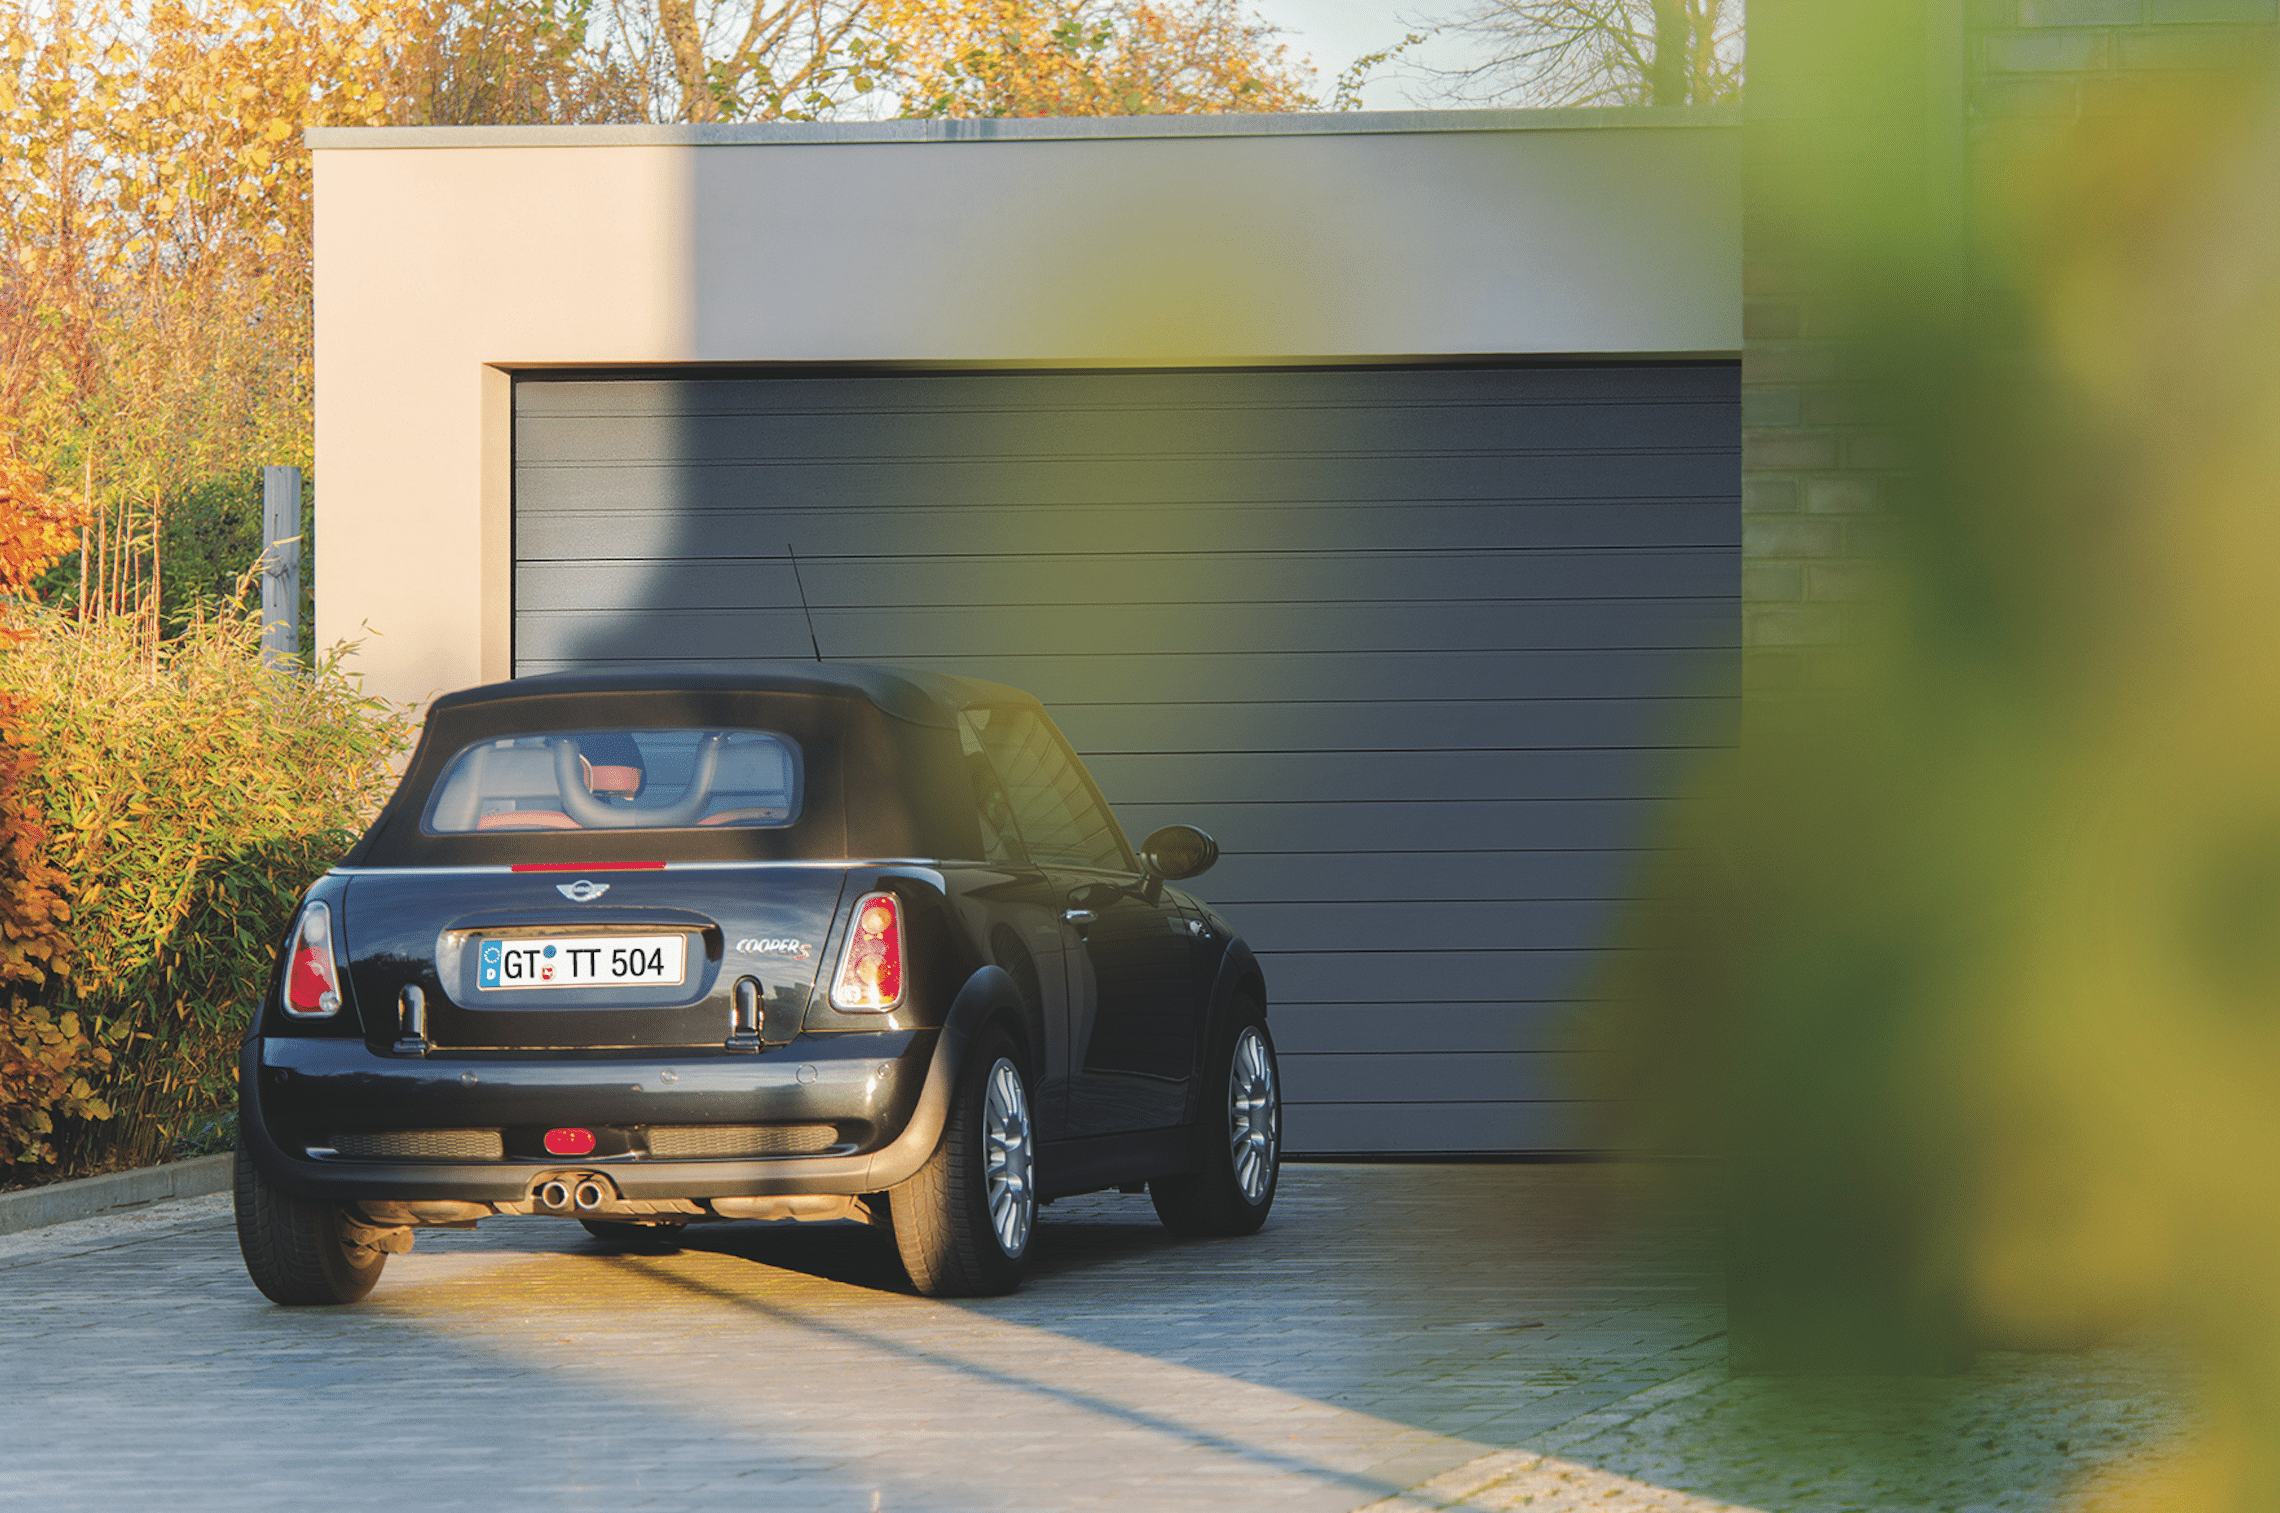 Teckentrup zeigt einen dunkelblauen Mini Cooper in der Einfahrt mit Garage, welche ei dunkelgraues Sektionaltor besitzt.